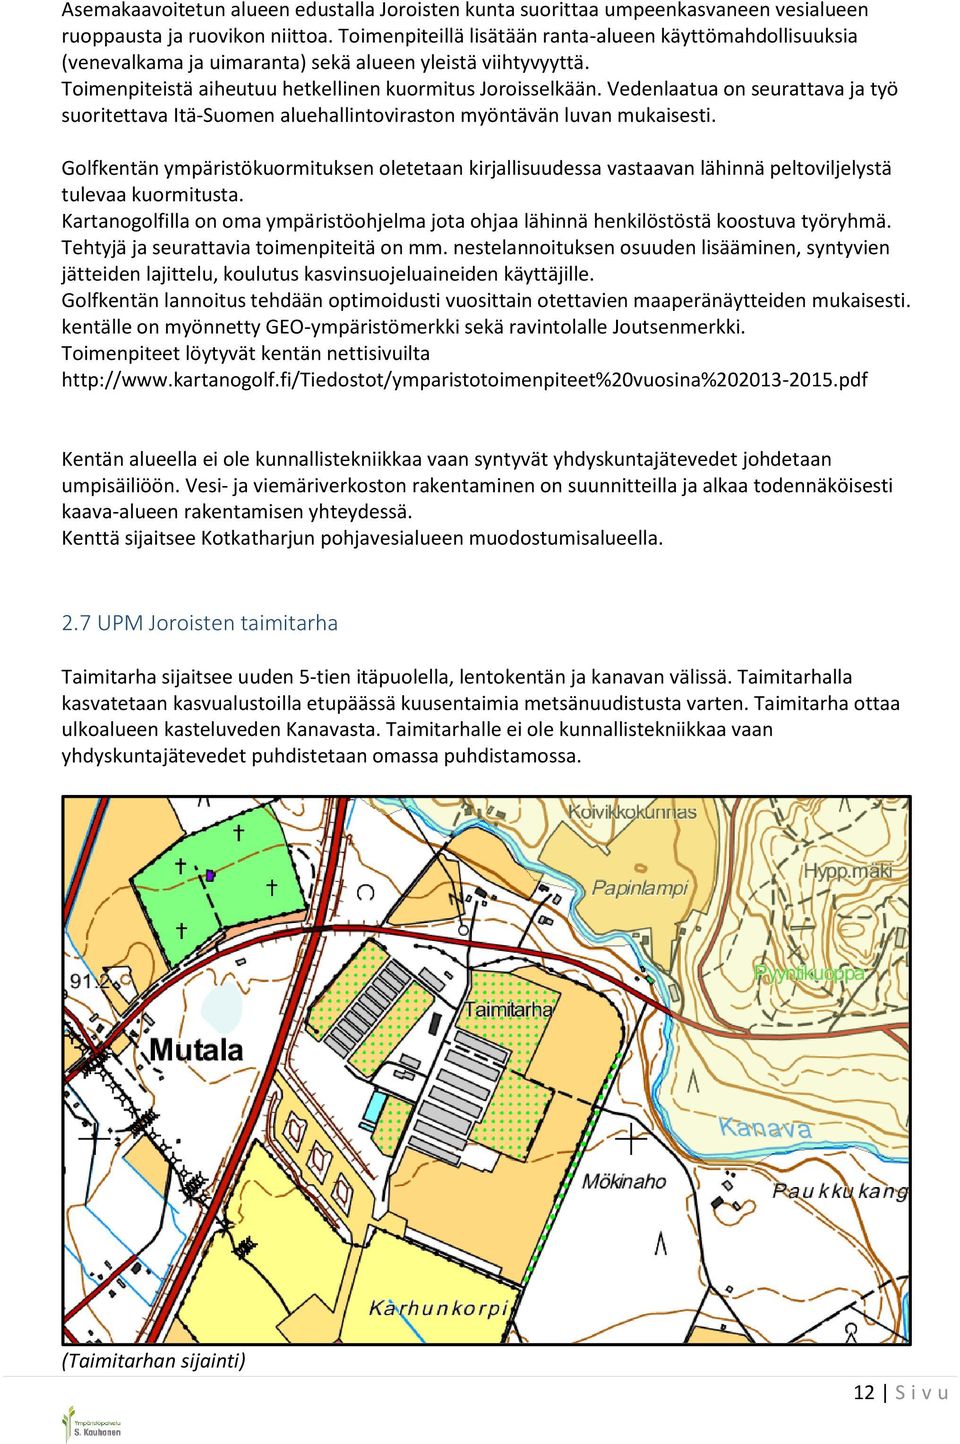 Vedenlaatua on seurattava ja työ suoritettava Itä-Suomen aluehallintoviraston myöntävän luvan mukaisesti.